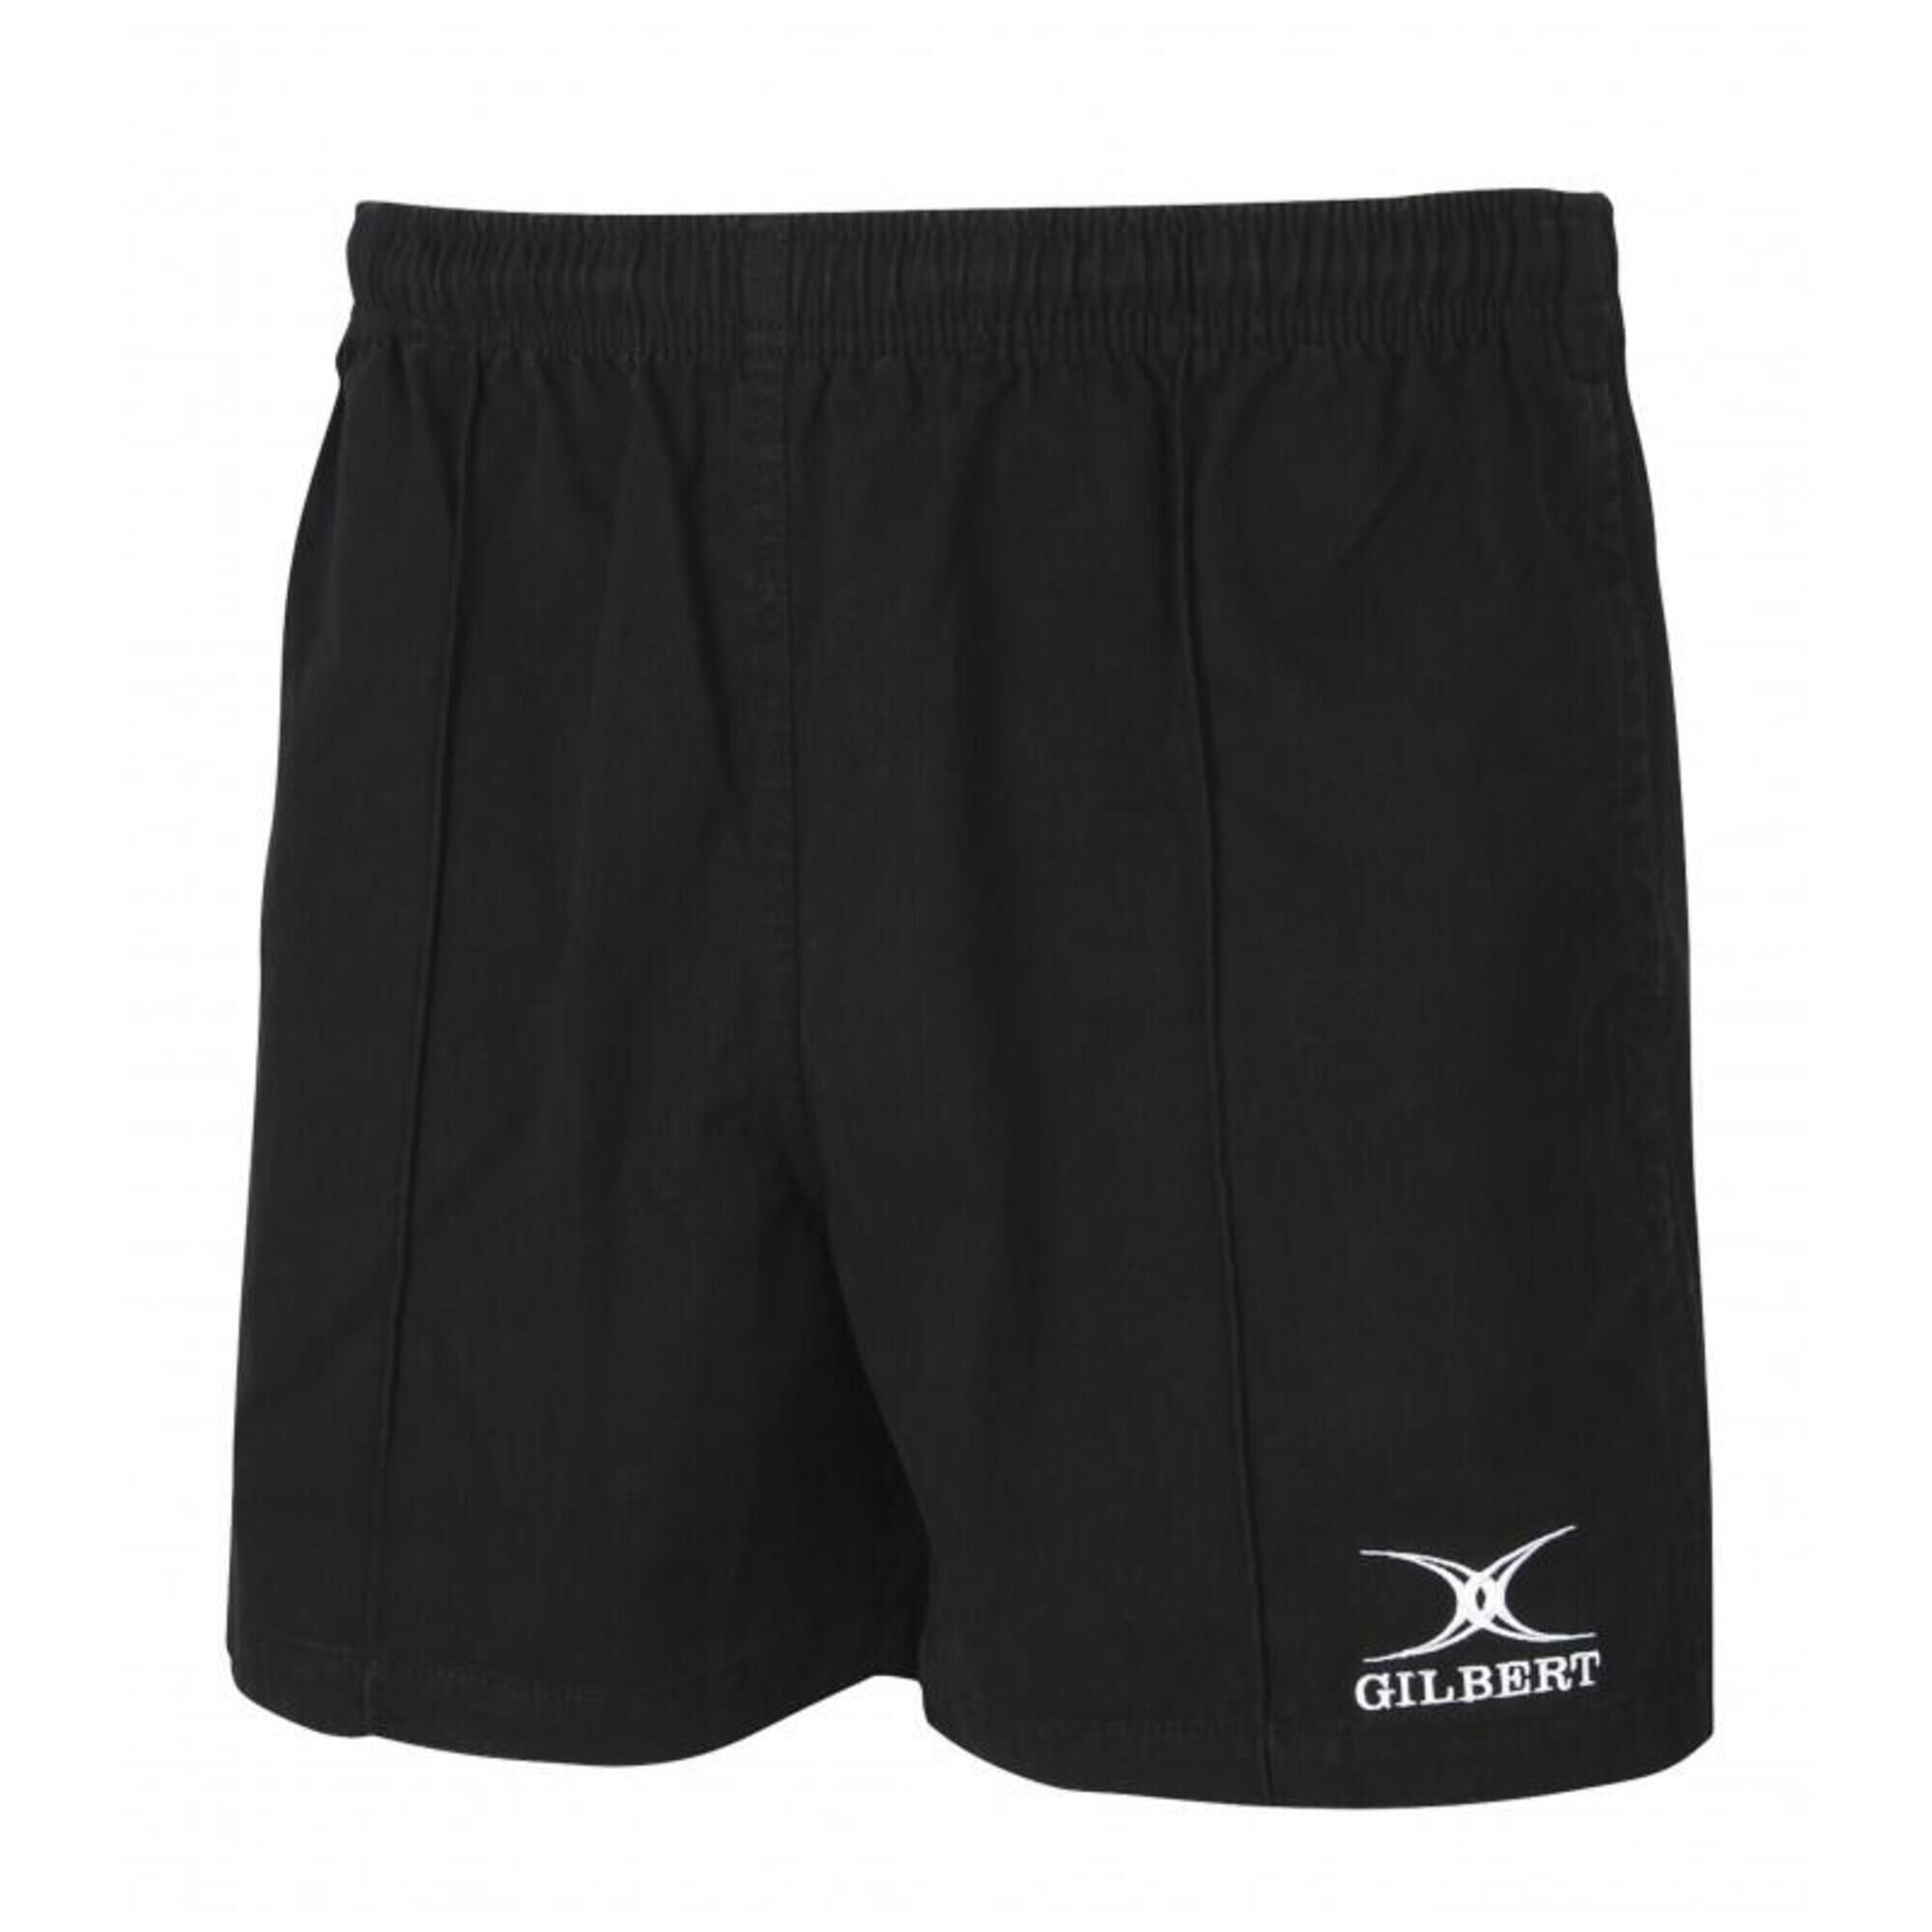 GILBERT Kiwi Pro Shorts, Black